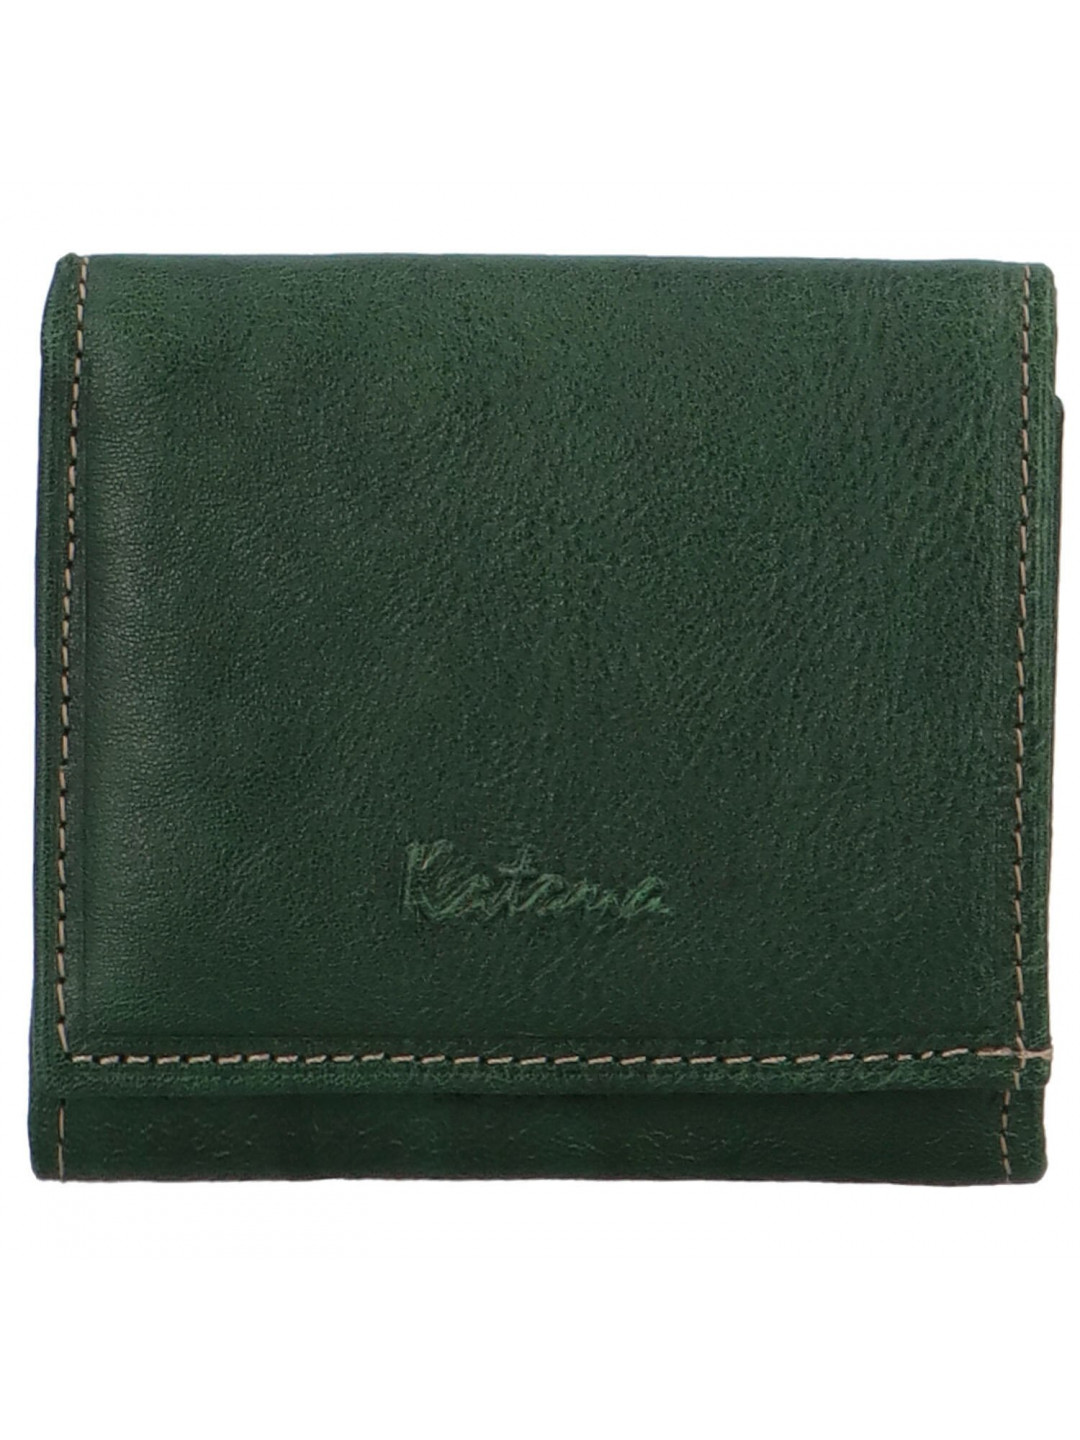 Dámská kožená peněženka tmavě zelená – Katana Triwia